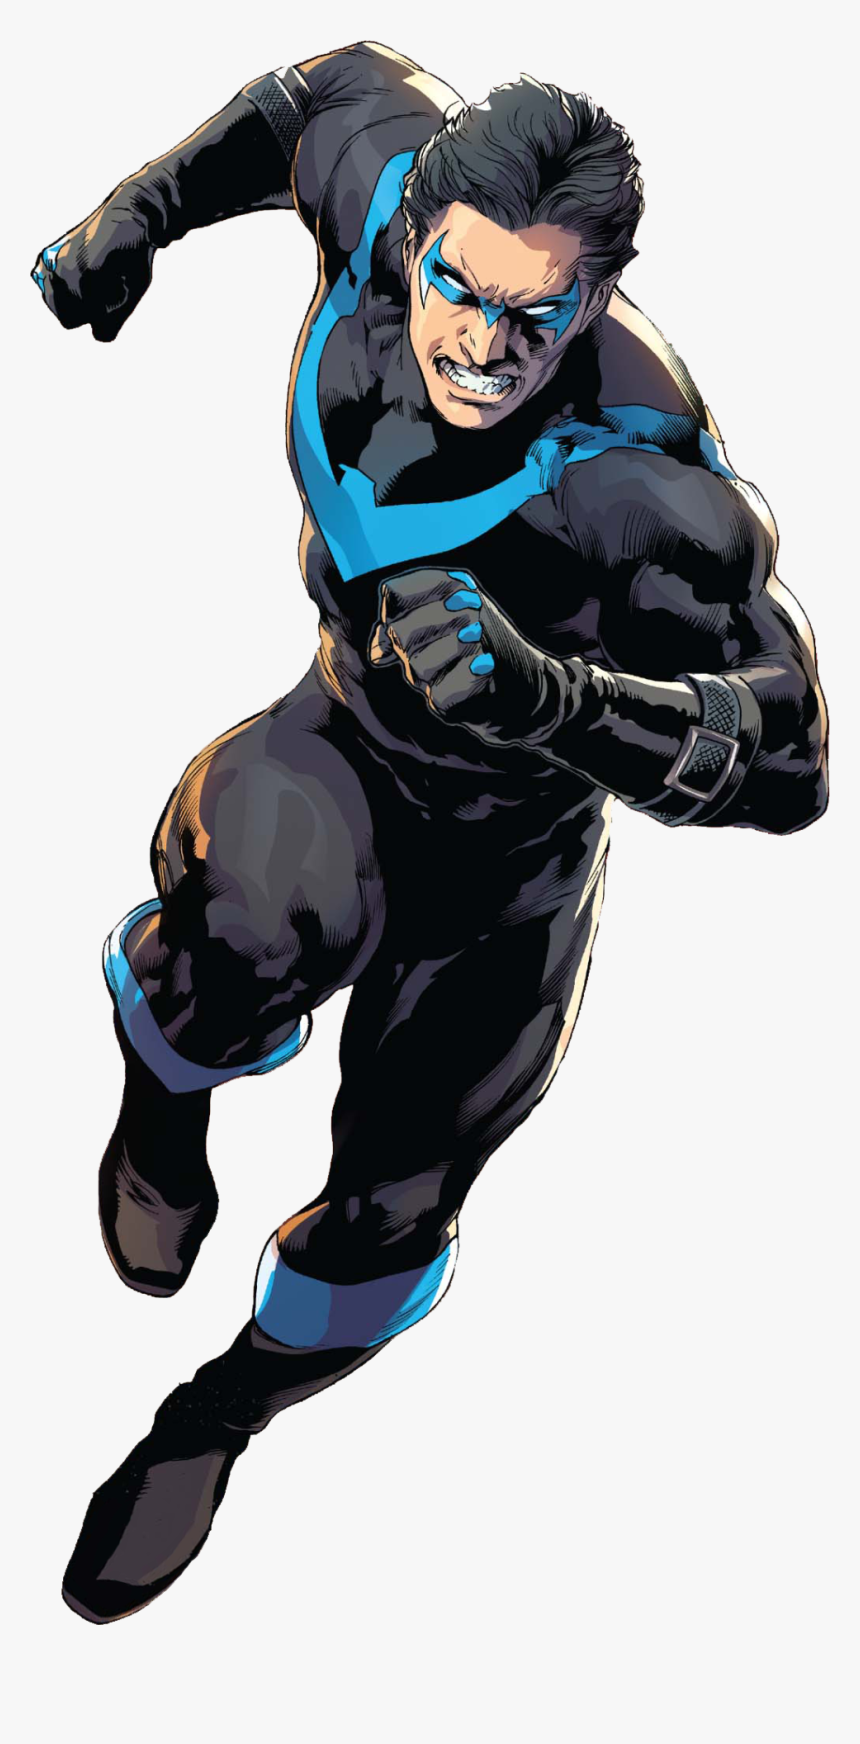 Image - Superhero Nightwing, HD Png Download, Free Download